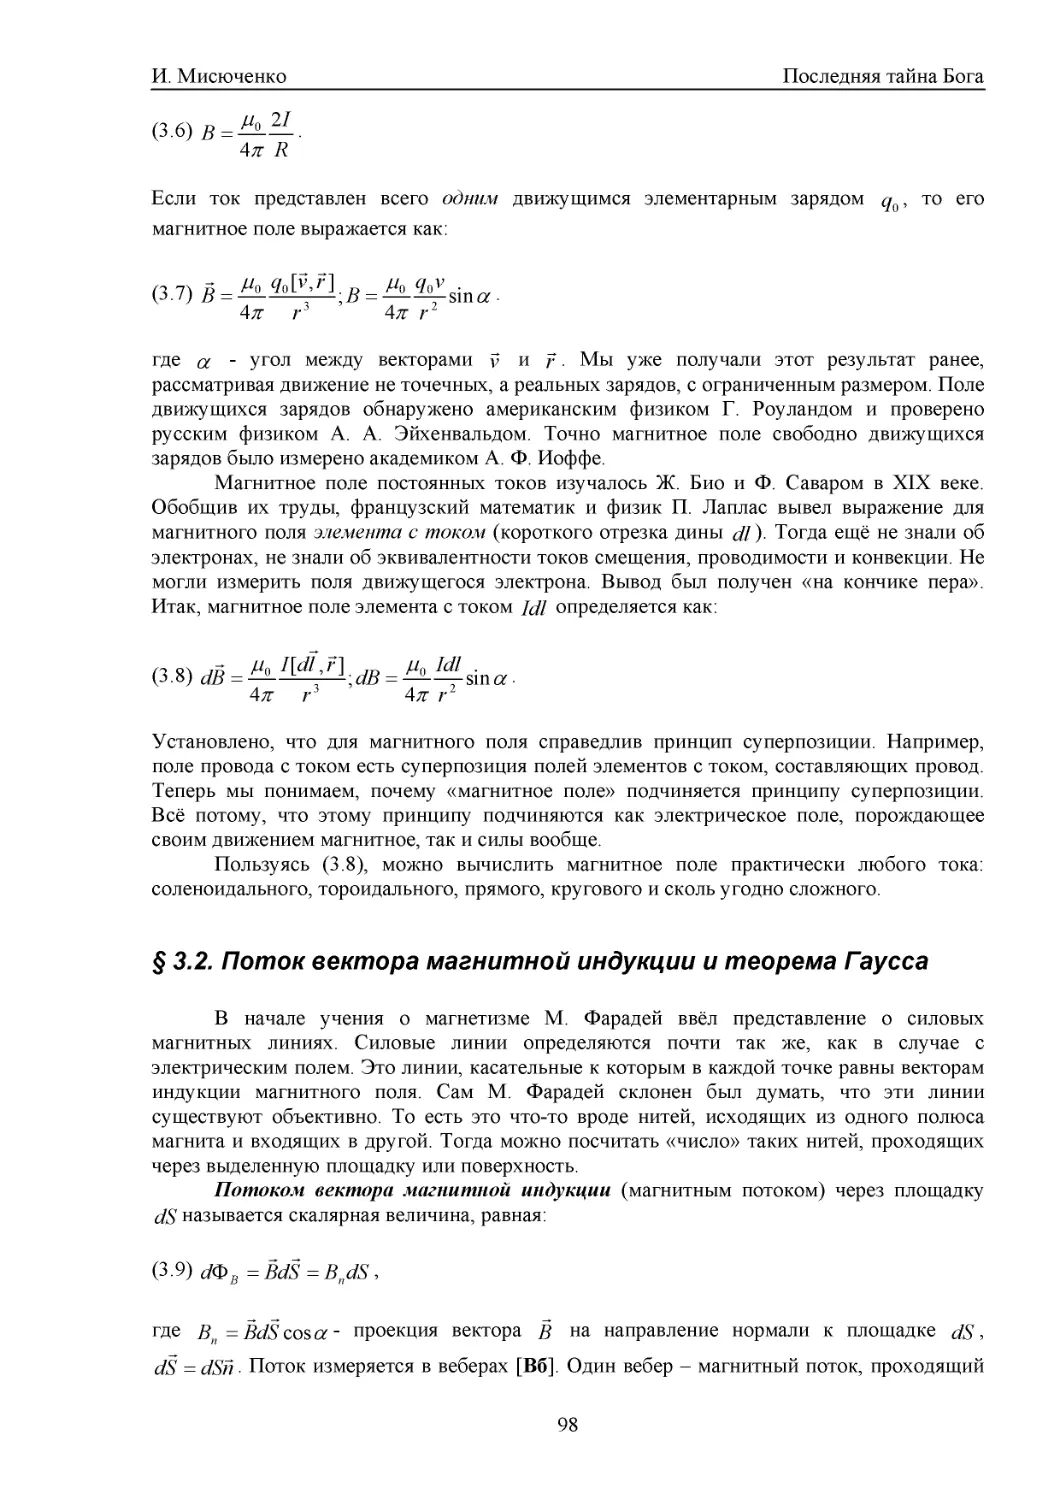 § 3.2. Поток вектора магнитной индукции и теорема Гаусса